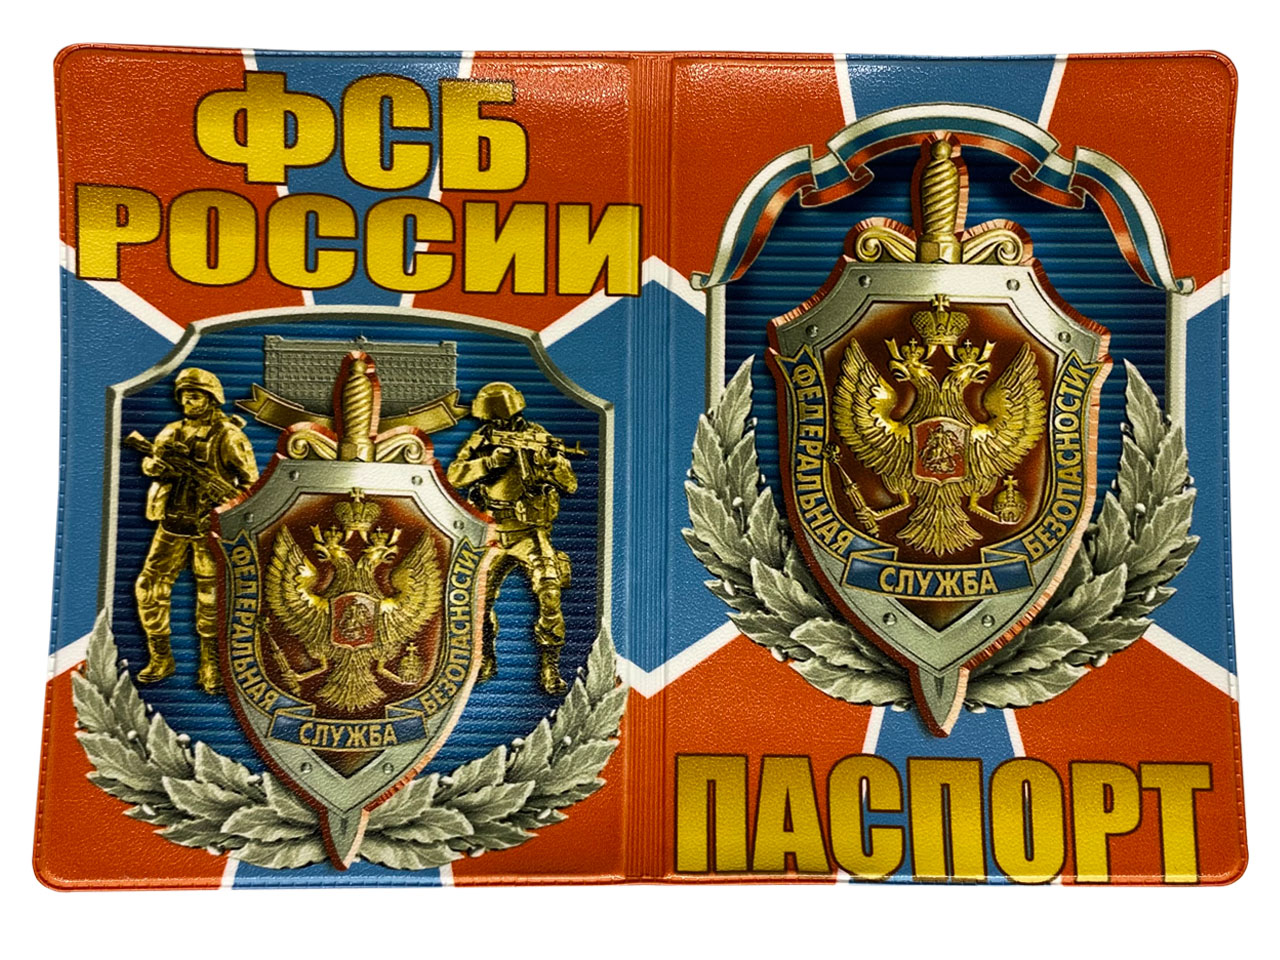 Купить обложку из ПВХ для паспорта "ФСБ России" недорого